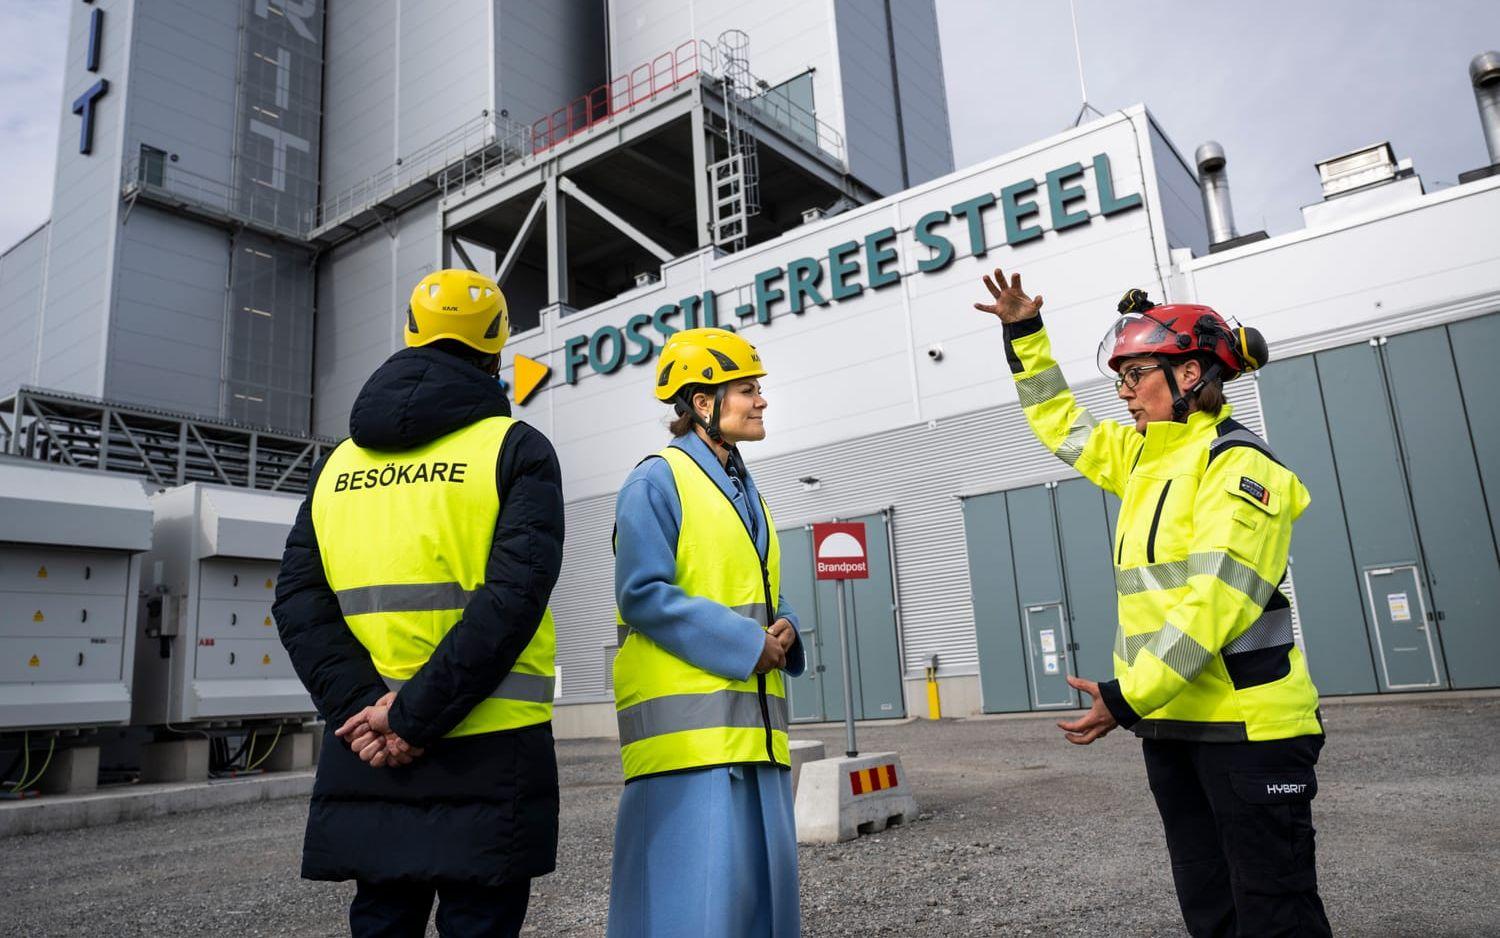 Kronprinsessan Victoria och prins Daniel besöker Luleå och Hybritprojektet som ska ta fram fossilfritt stål.